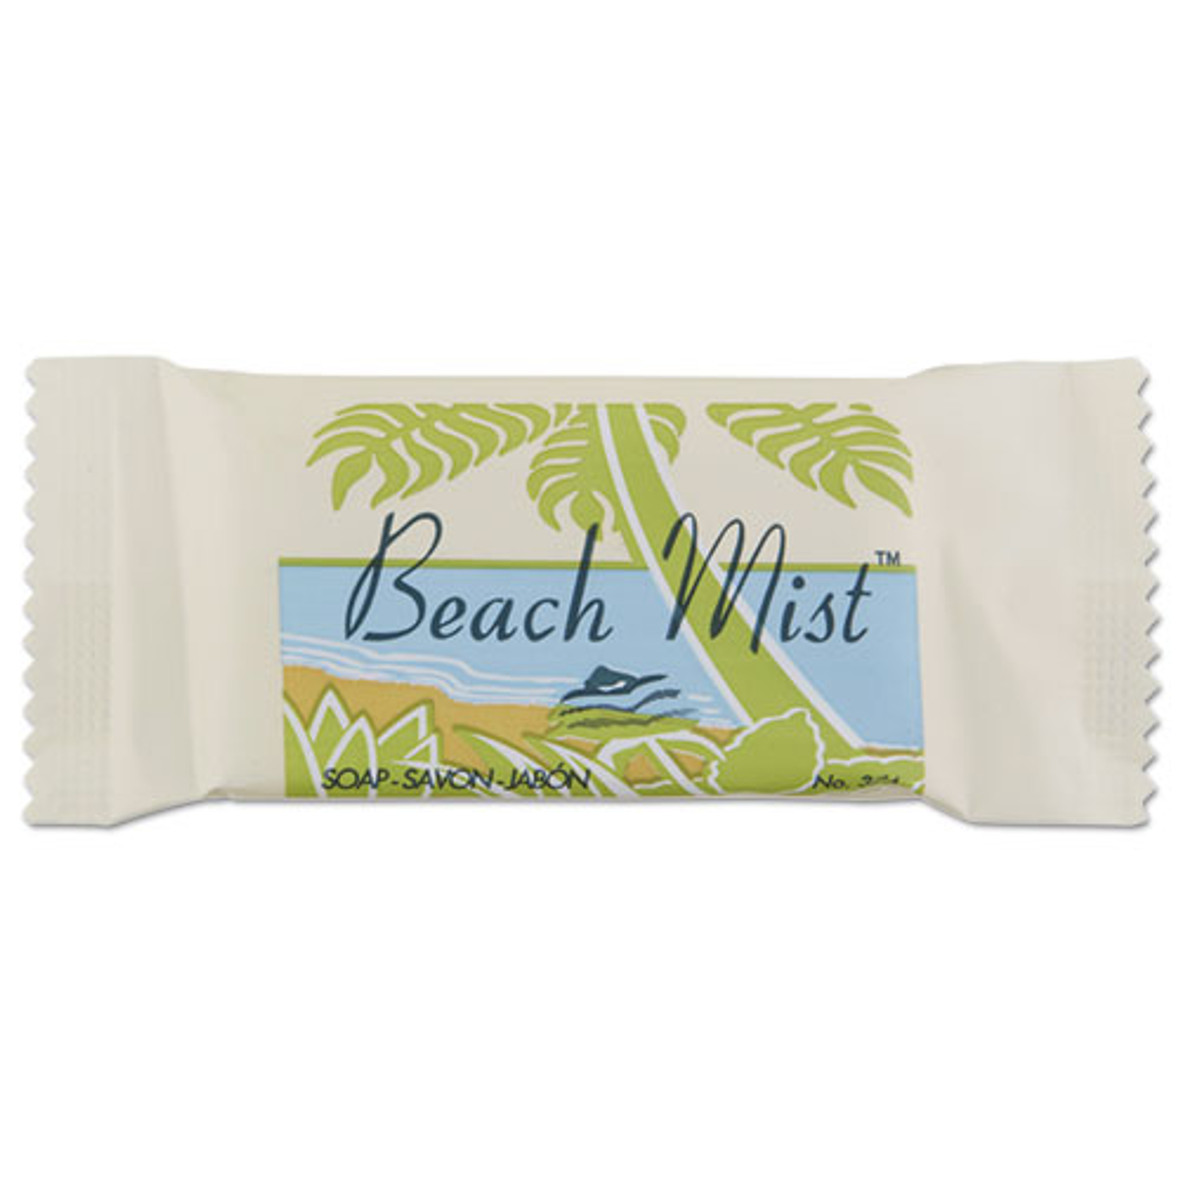 Beach Mist™ Face and Body Soap, Beach Mist Fragrance